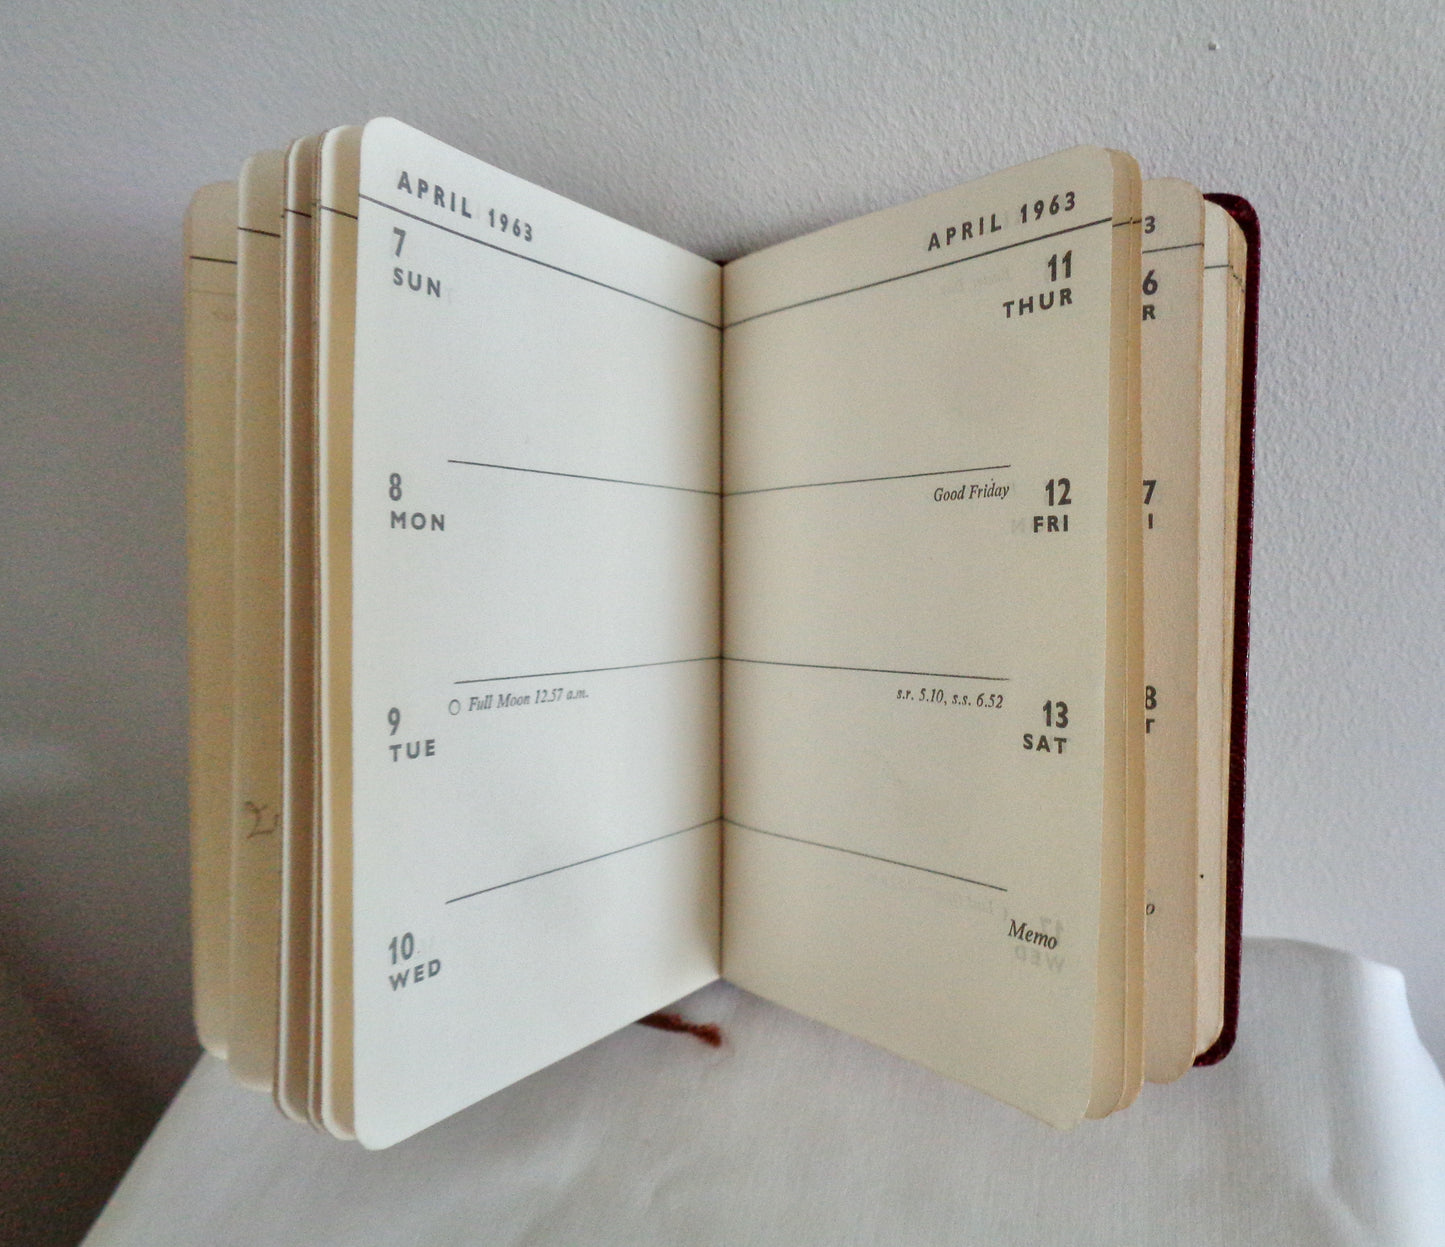 1963 The Wireless World Pocket Diary By TJ & J Smith